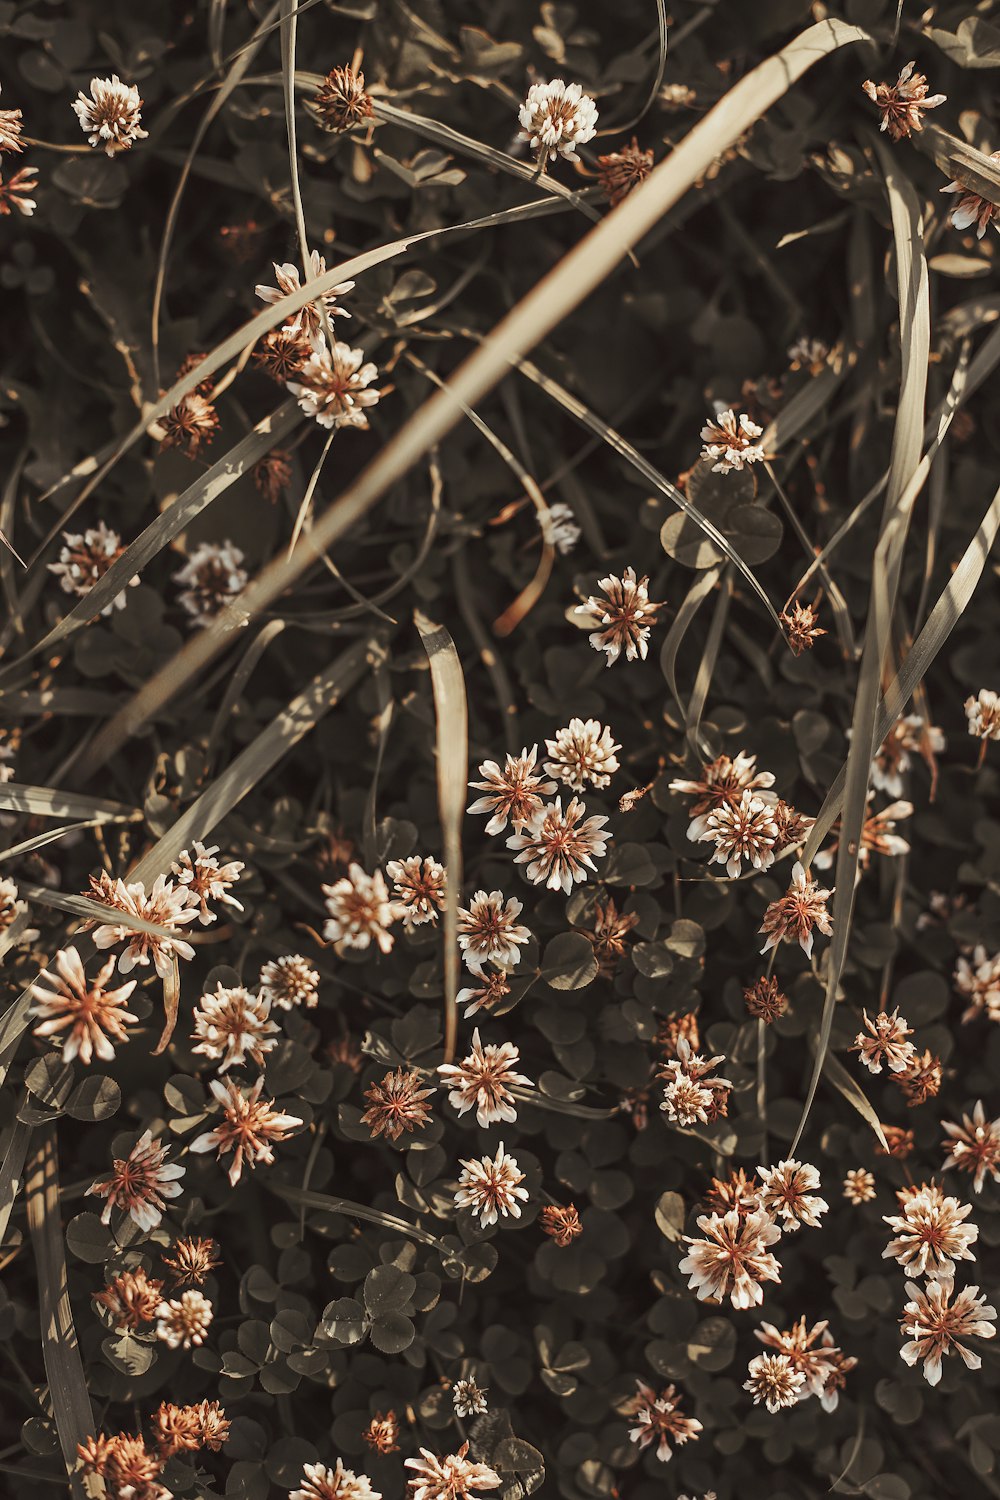 white and brown flowers in tilt shift lens